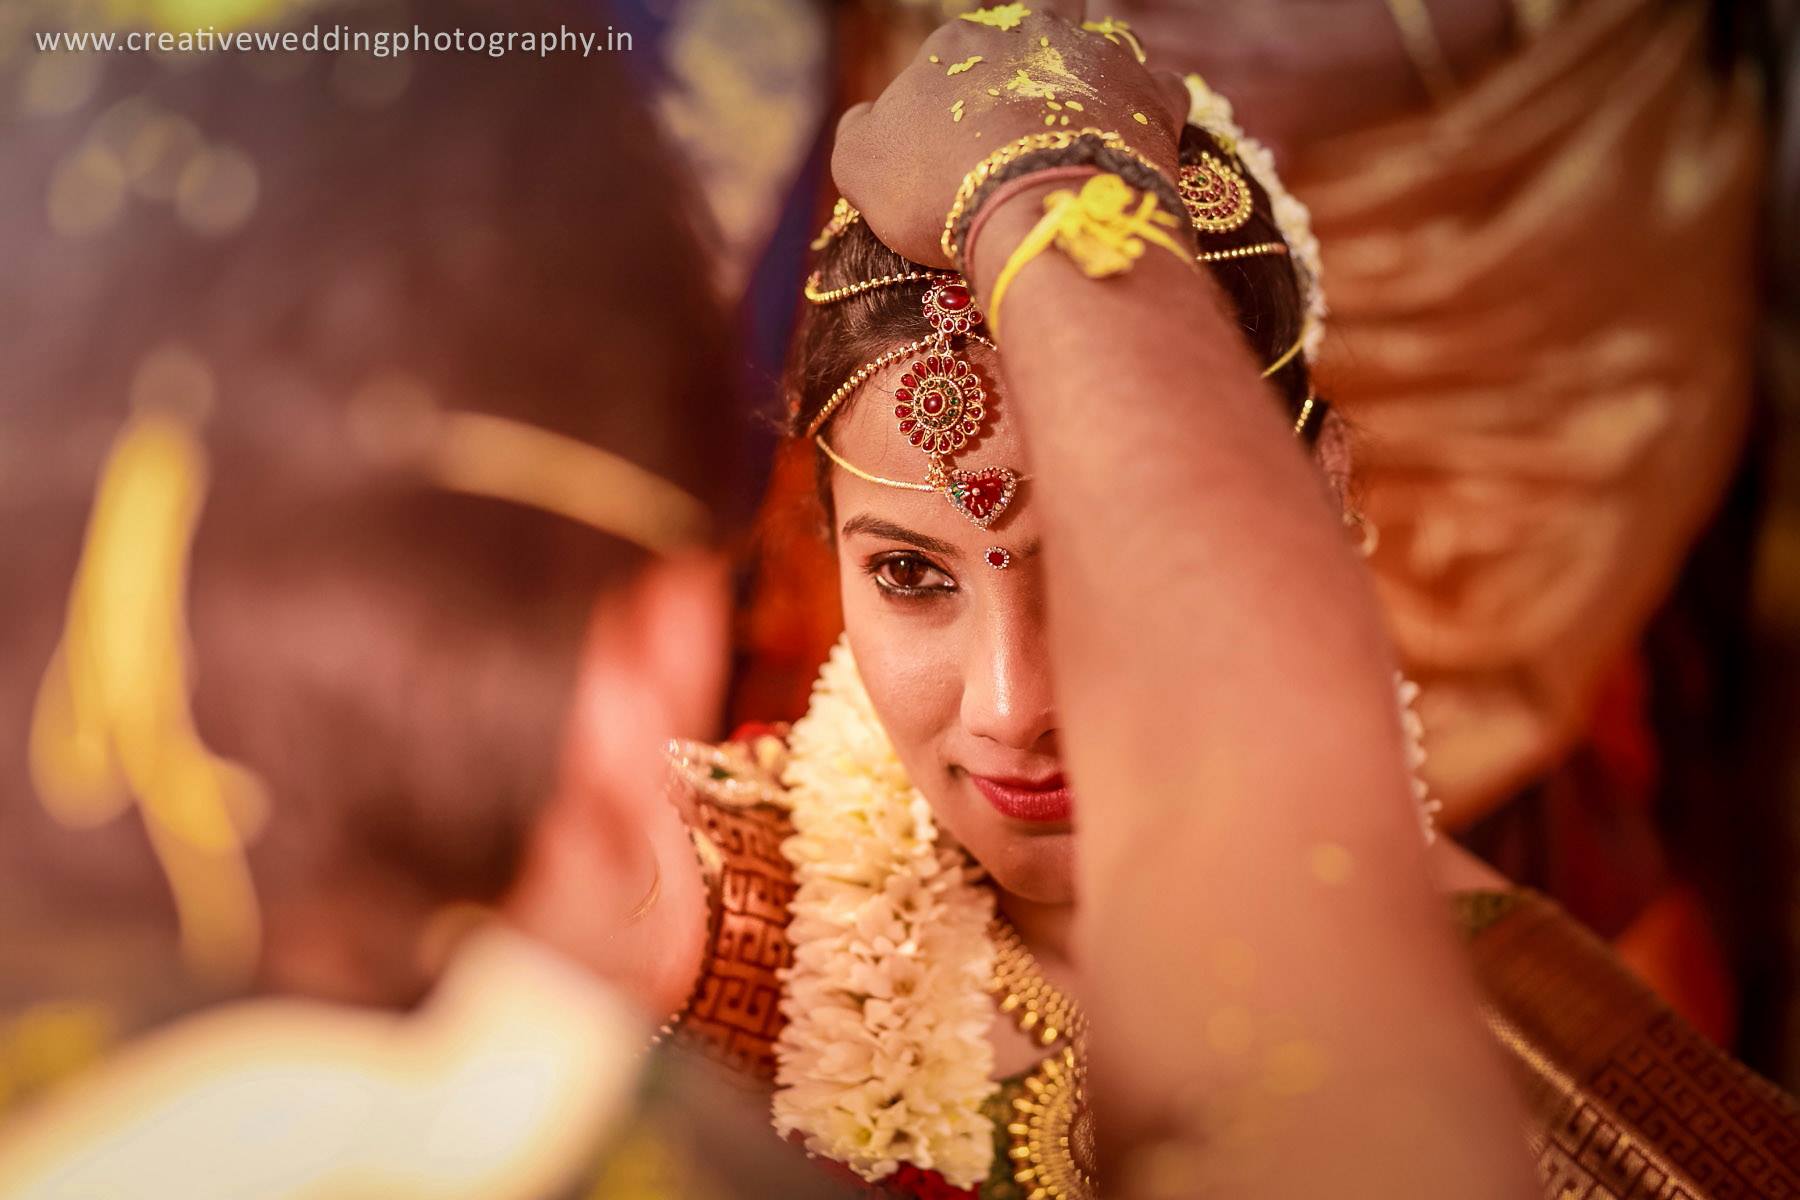  Creative Wedding Photography-img8